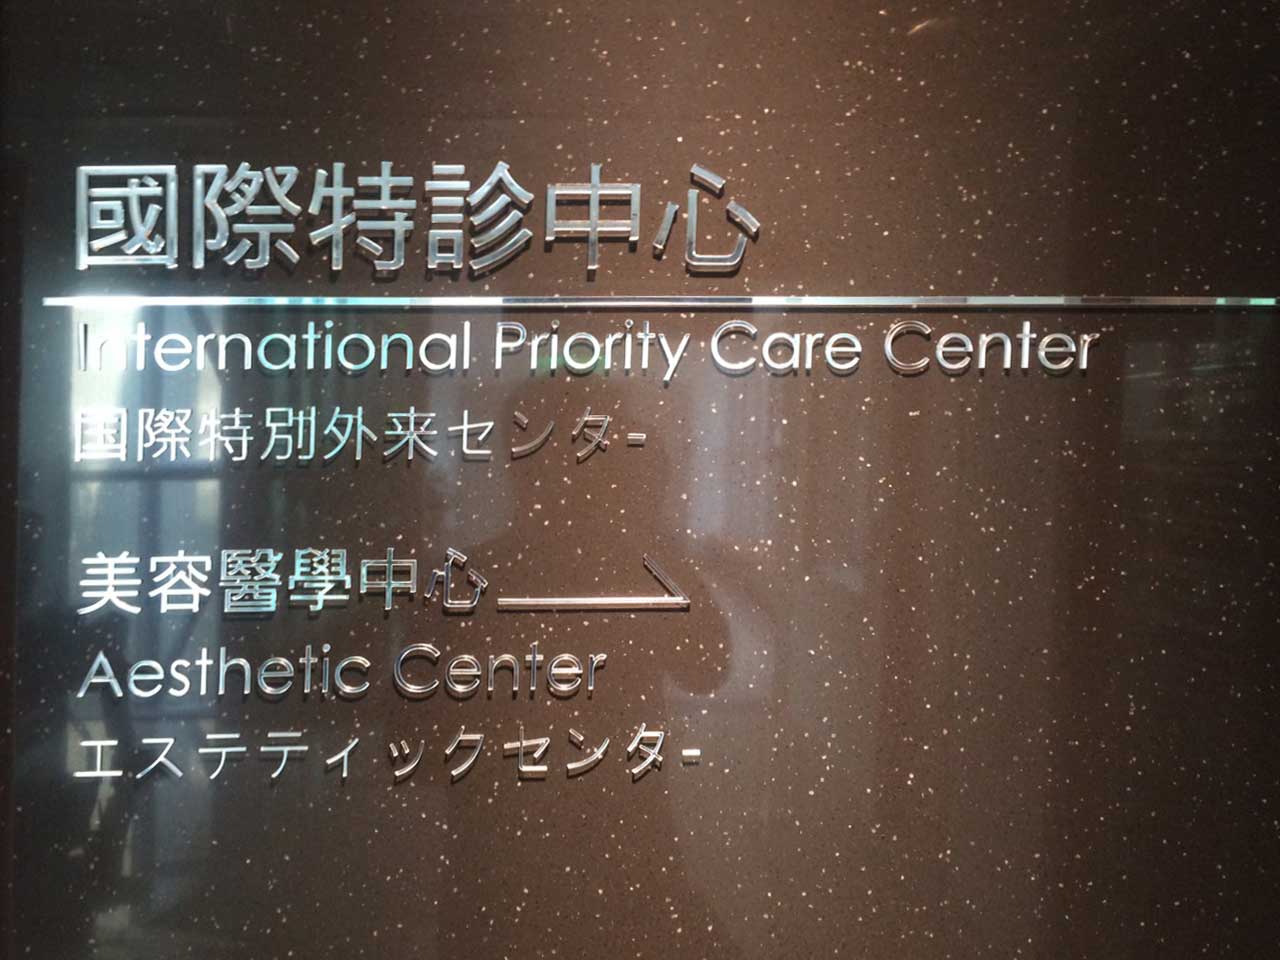 松山區醫院專業招牌指示牌製作